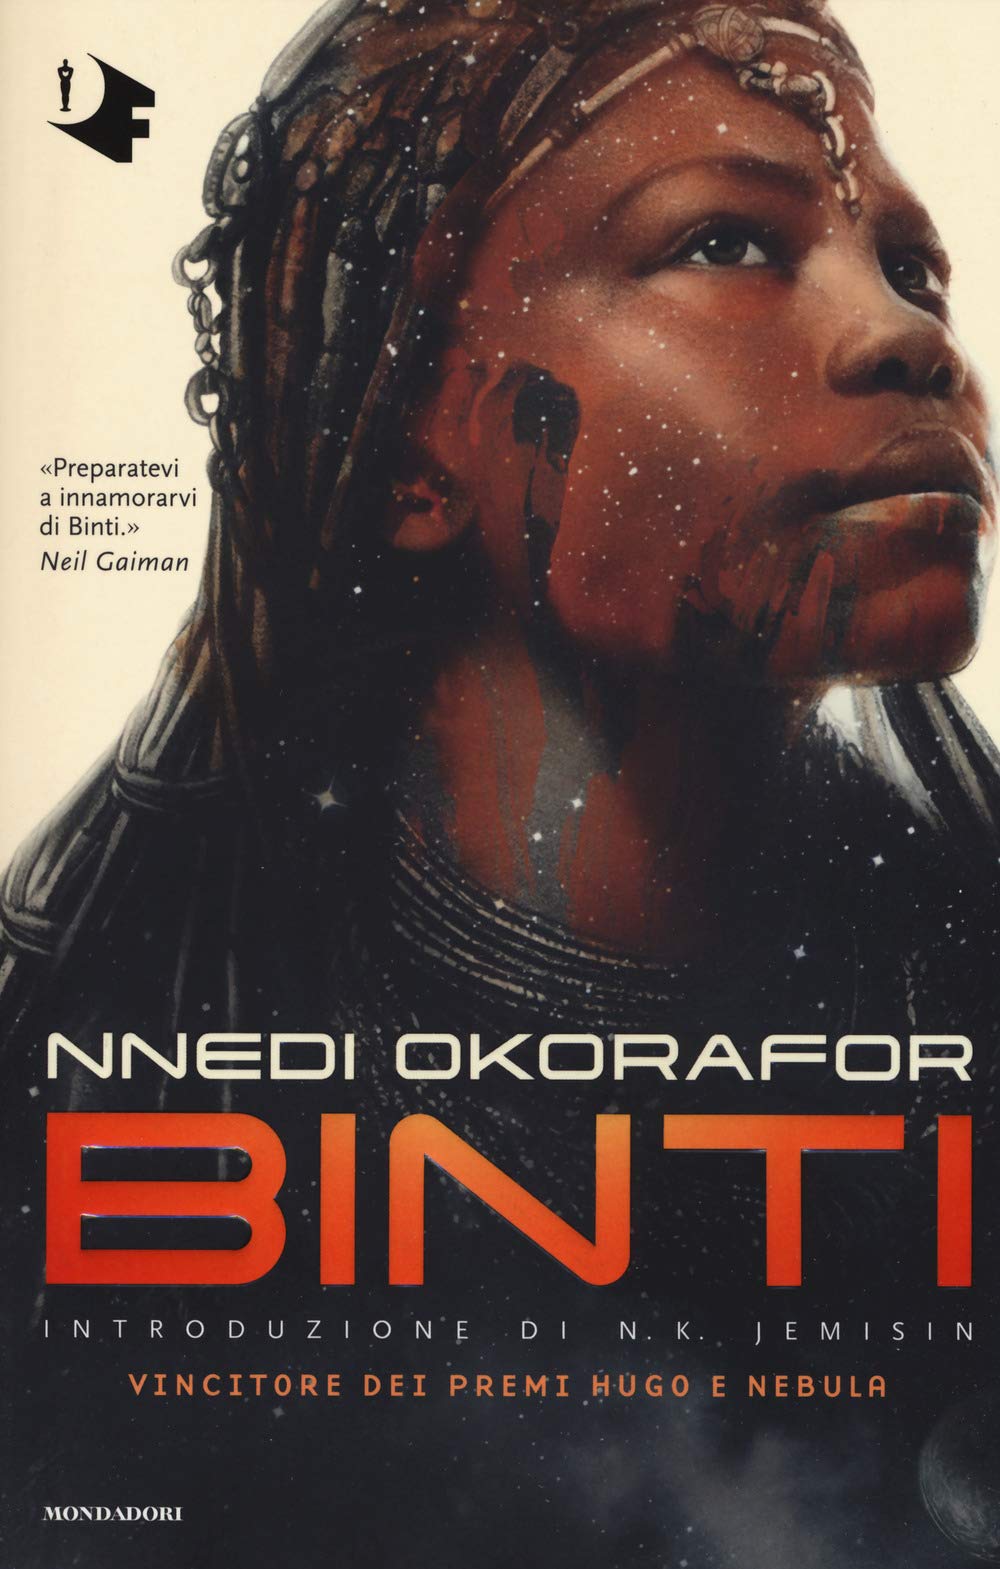 Recensione: “Binti” di Nnedi Okorafor